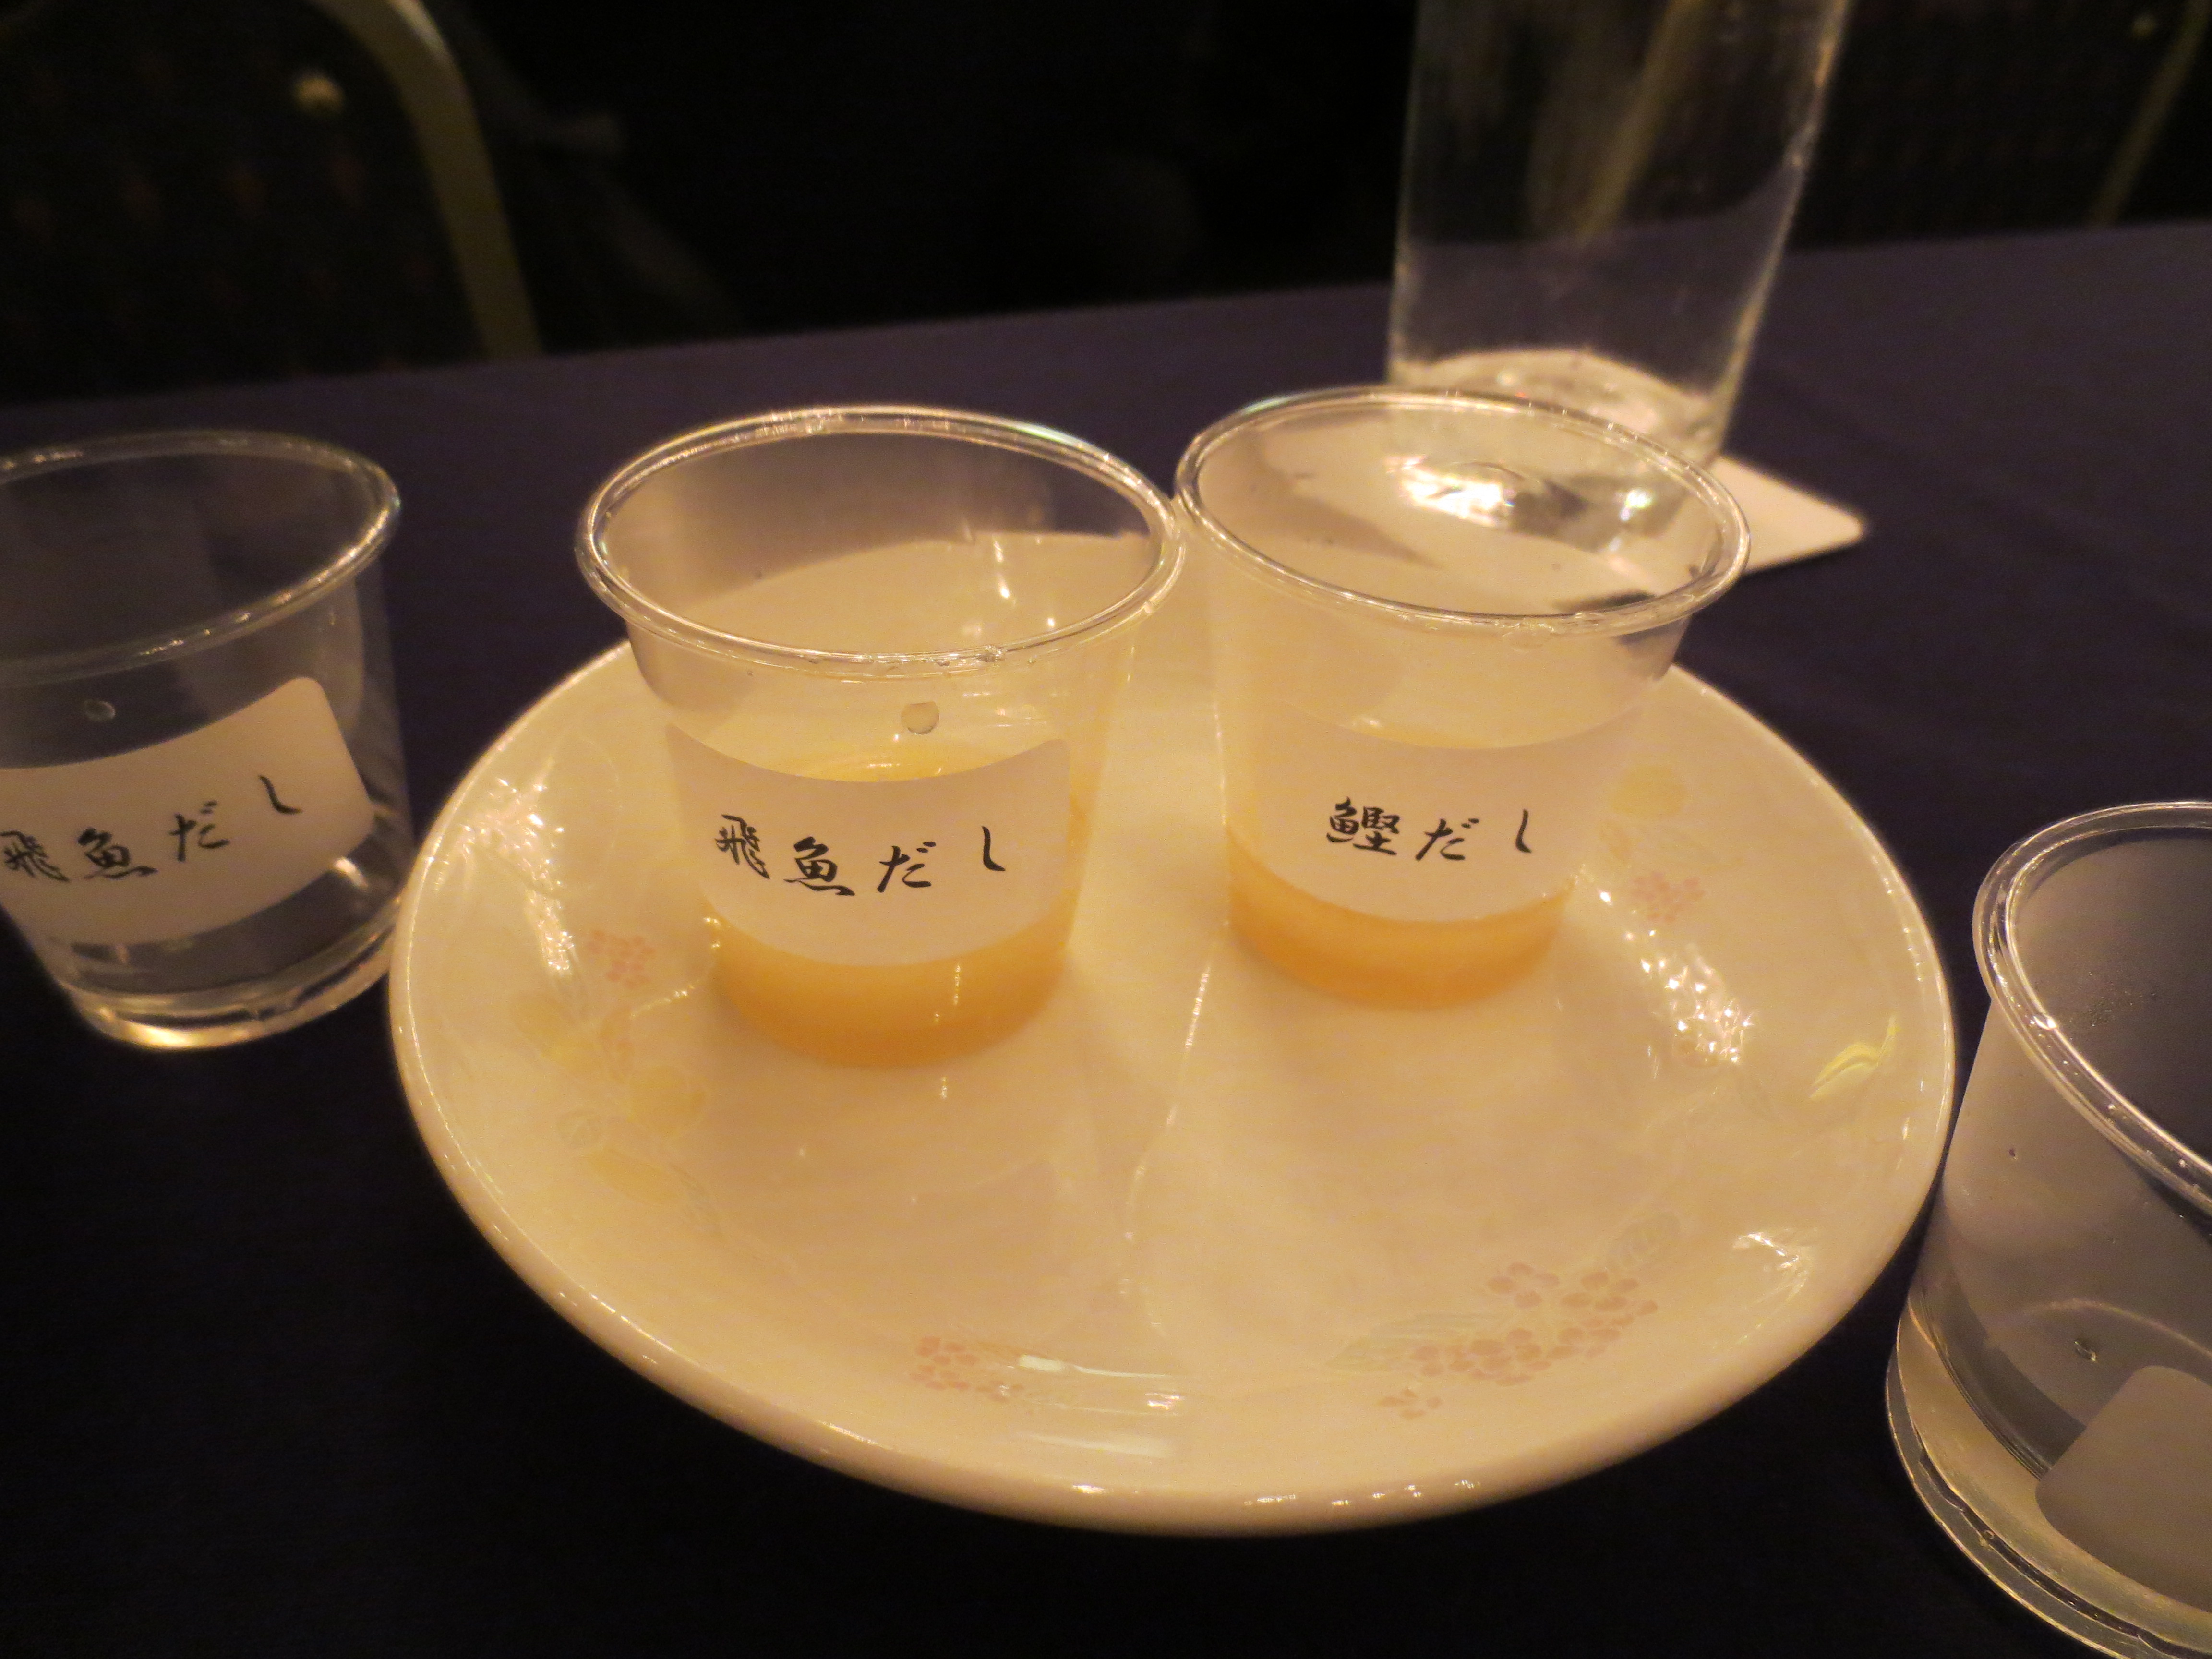 麦味噌の味噌汁あごだしとカツオダシ マルカワみそのスタッフブログ